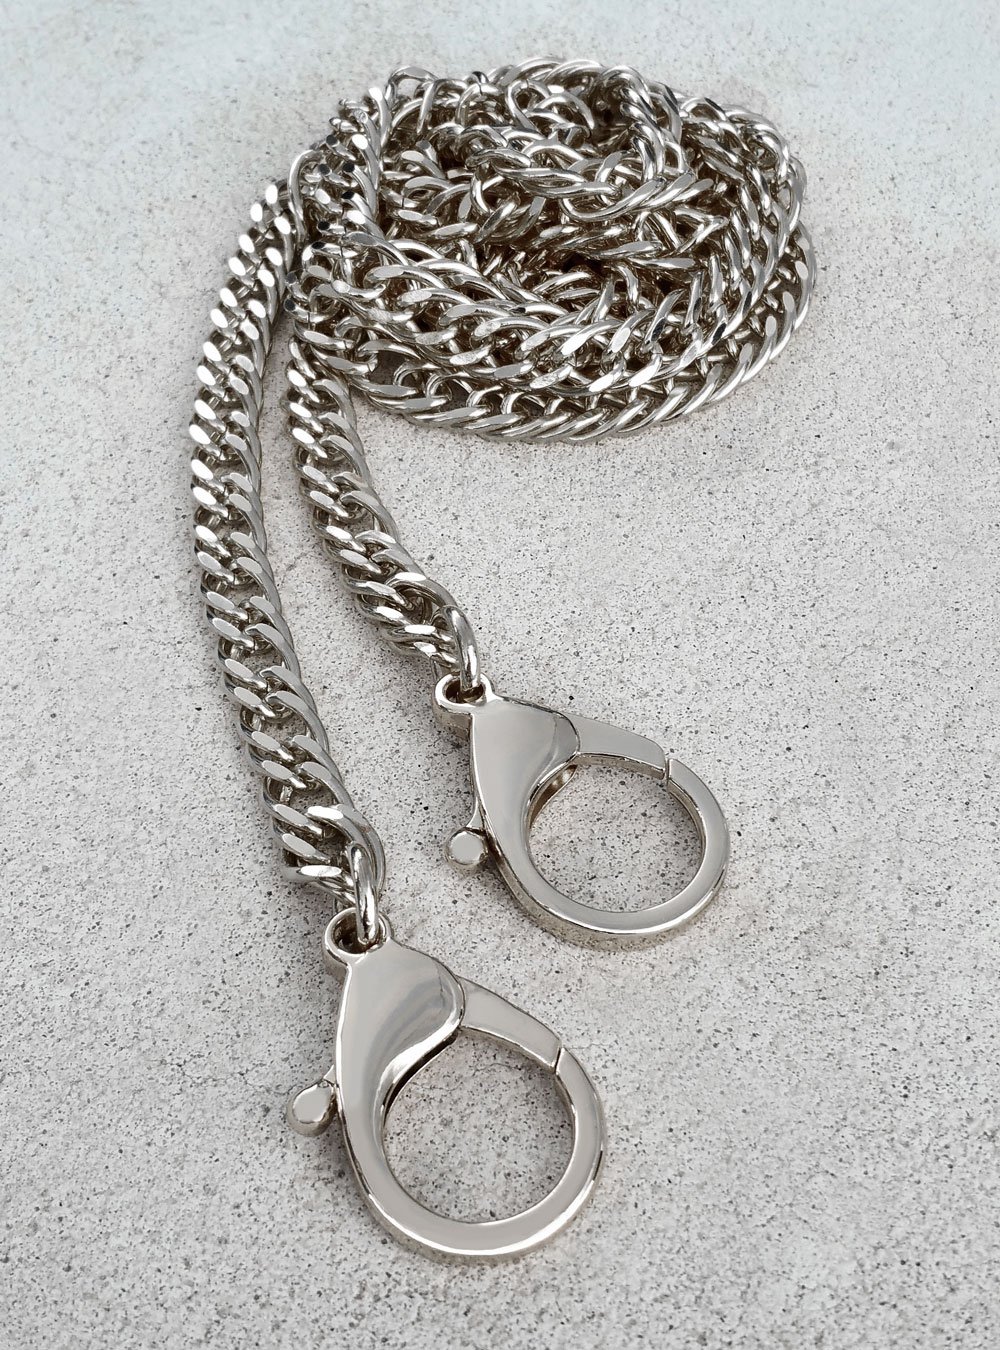 Mautto Twisted Braid Chain Strap